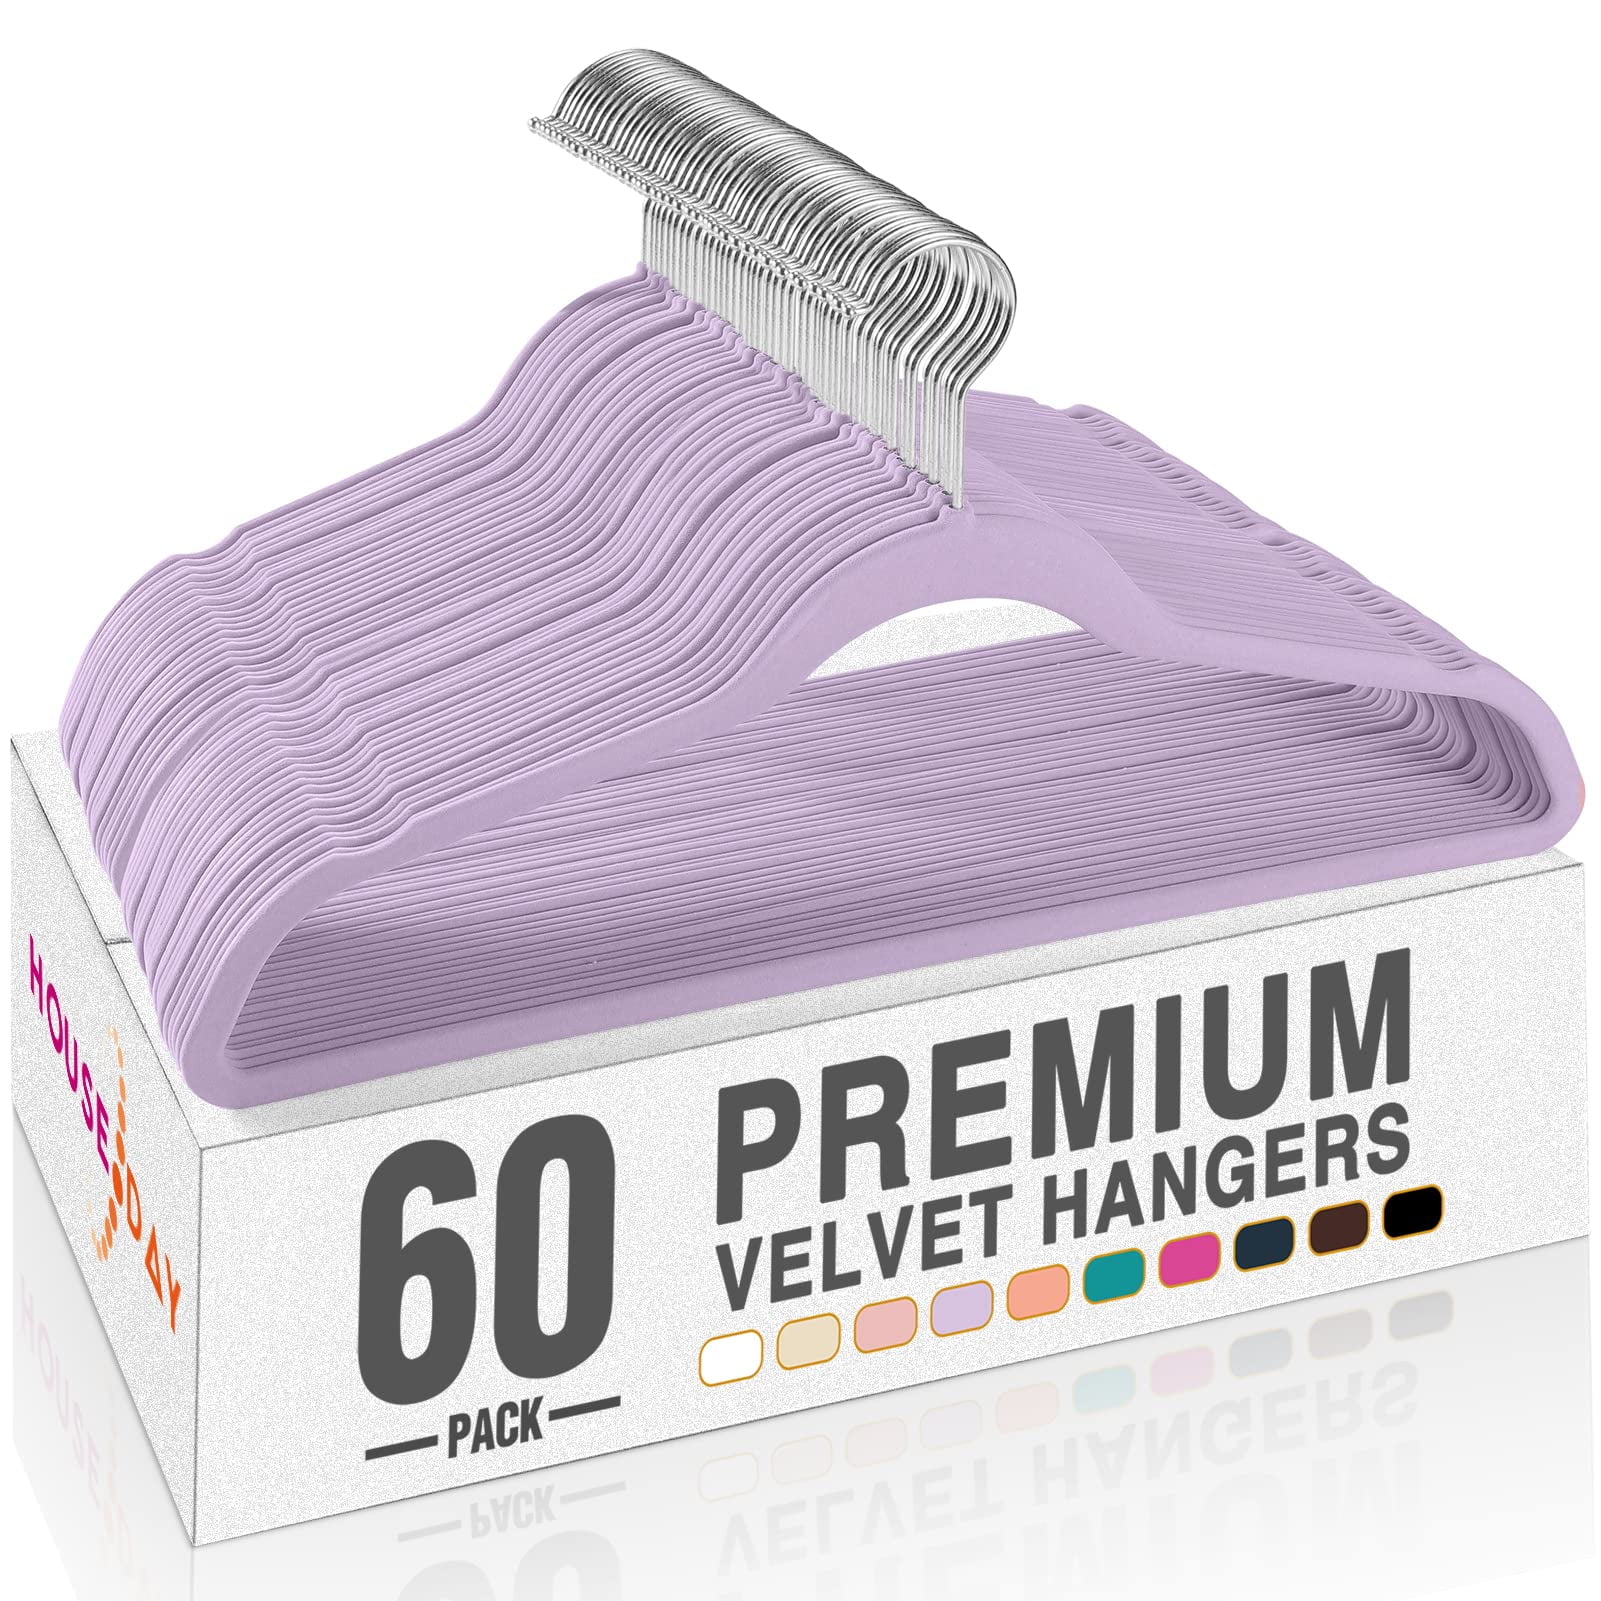 Premium Velvet Hangers (50 Pack) Heavy Duty Non Slip Felt Hangers